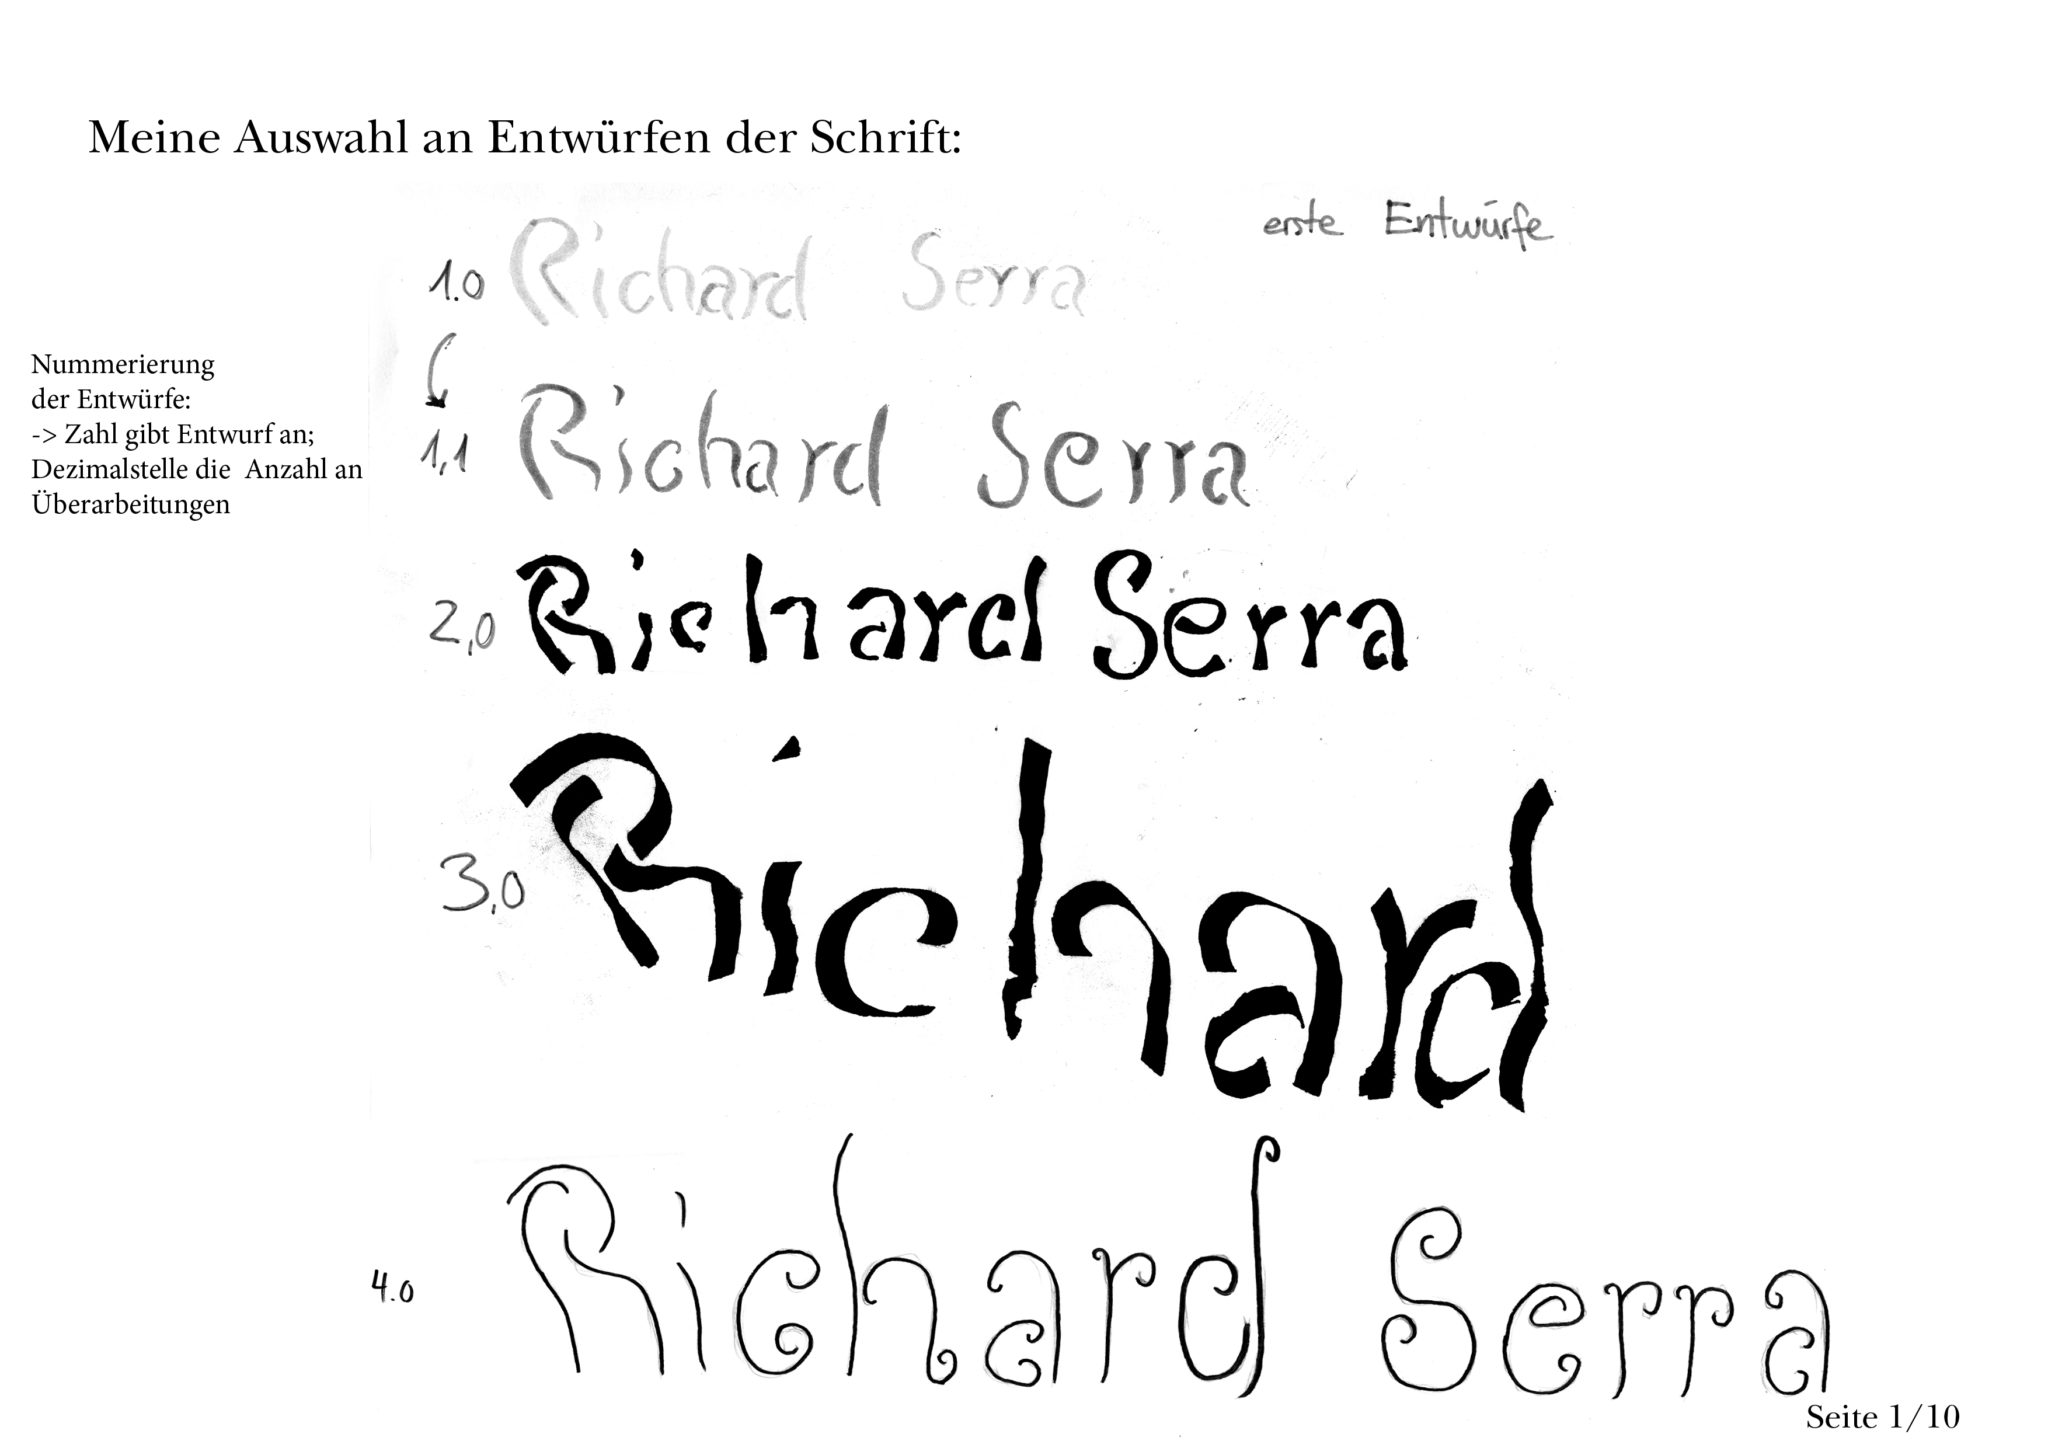 Meine ersten Entwürfe für die Schrift im Stil von Richard Serra.